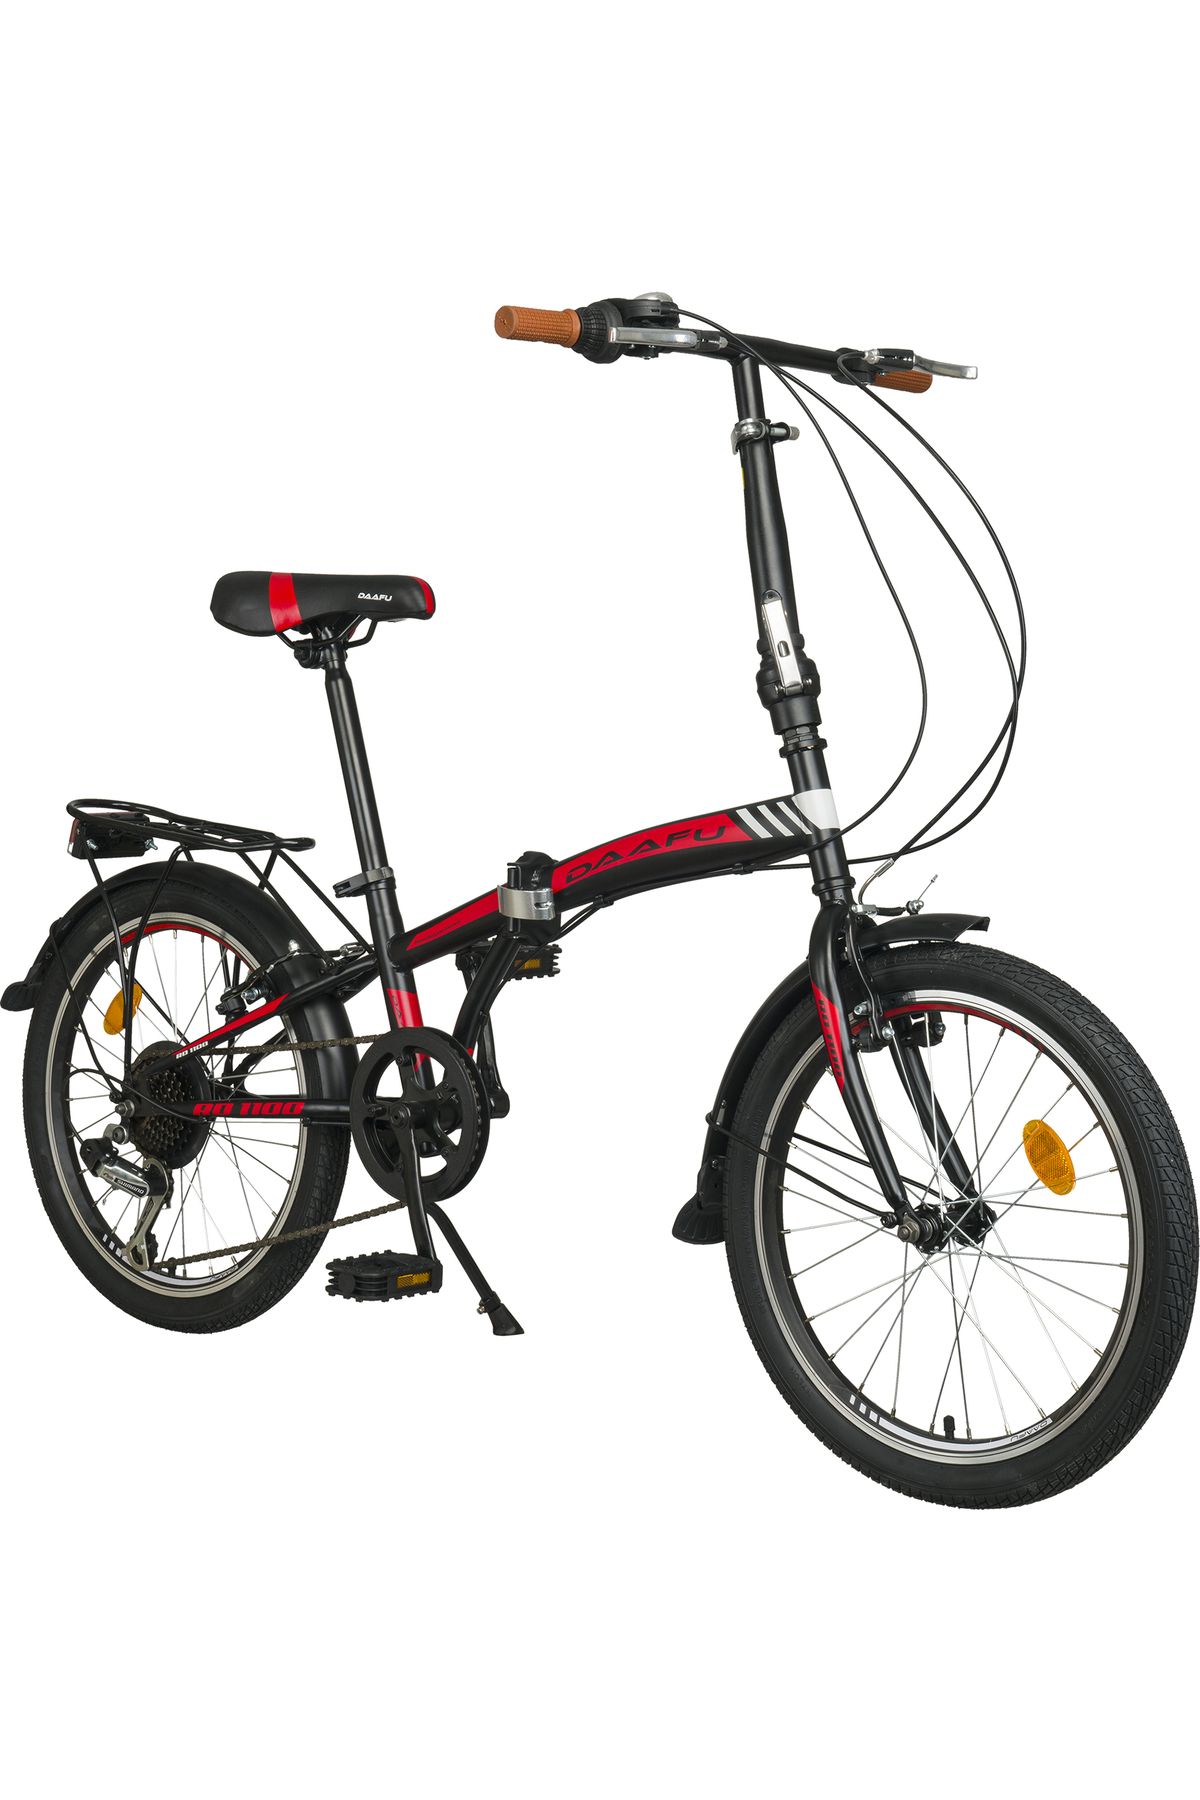 Kldoro Daafu Rd1100 Folding 20 Jant Bisiklet Katlanır Bisikleti